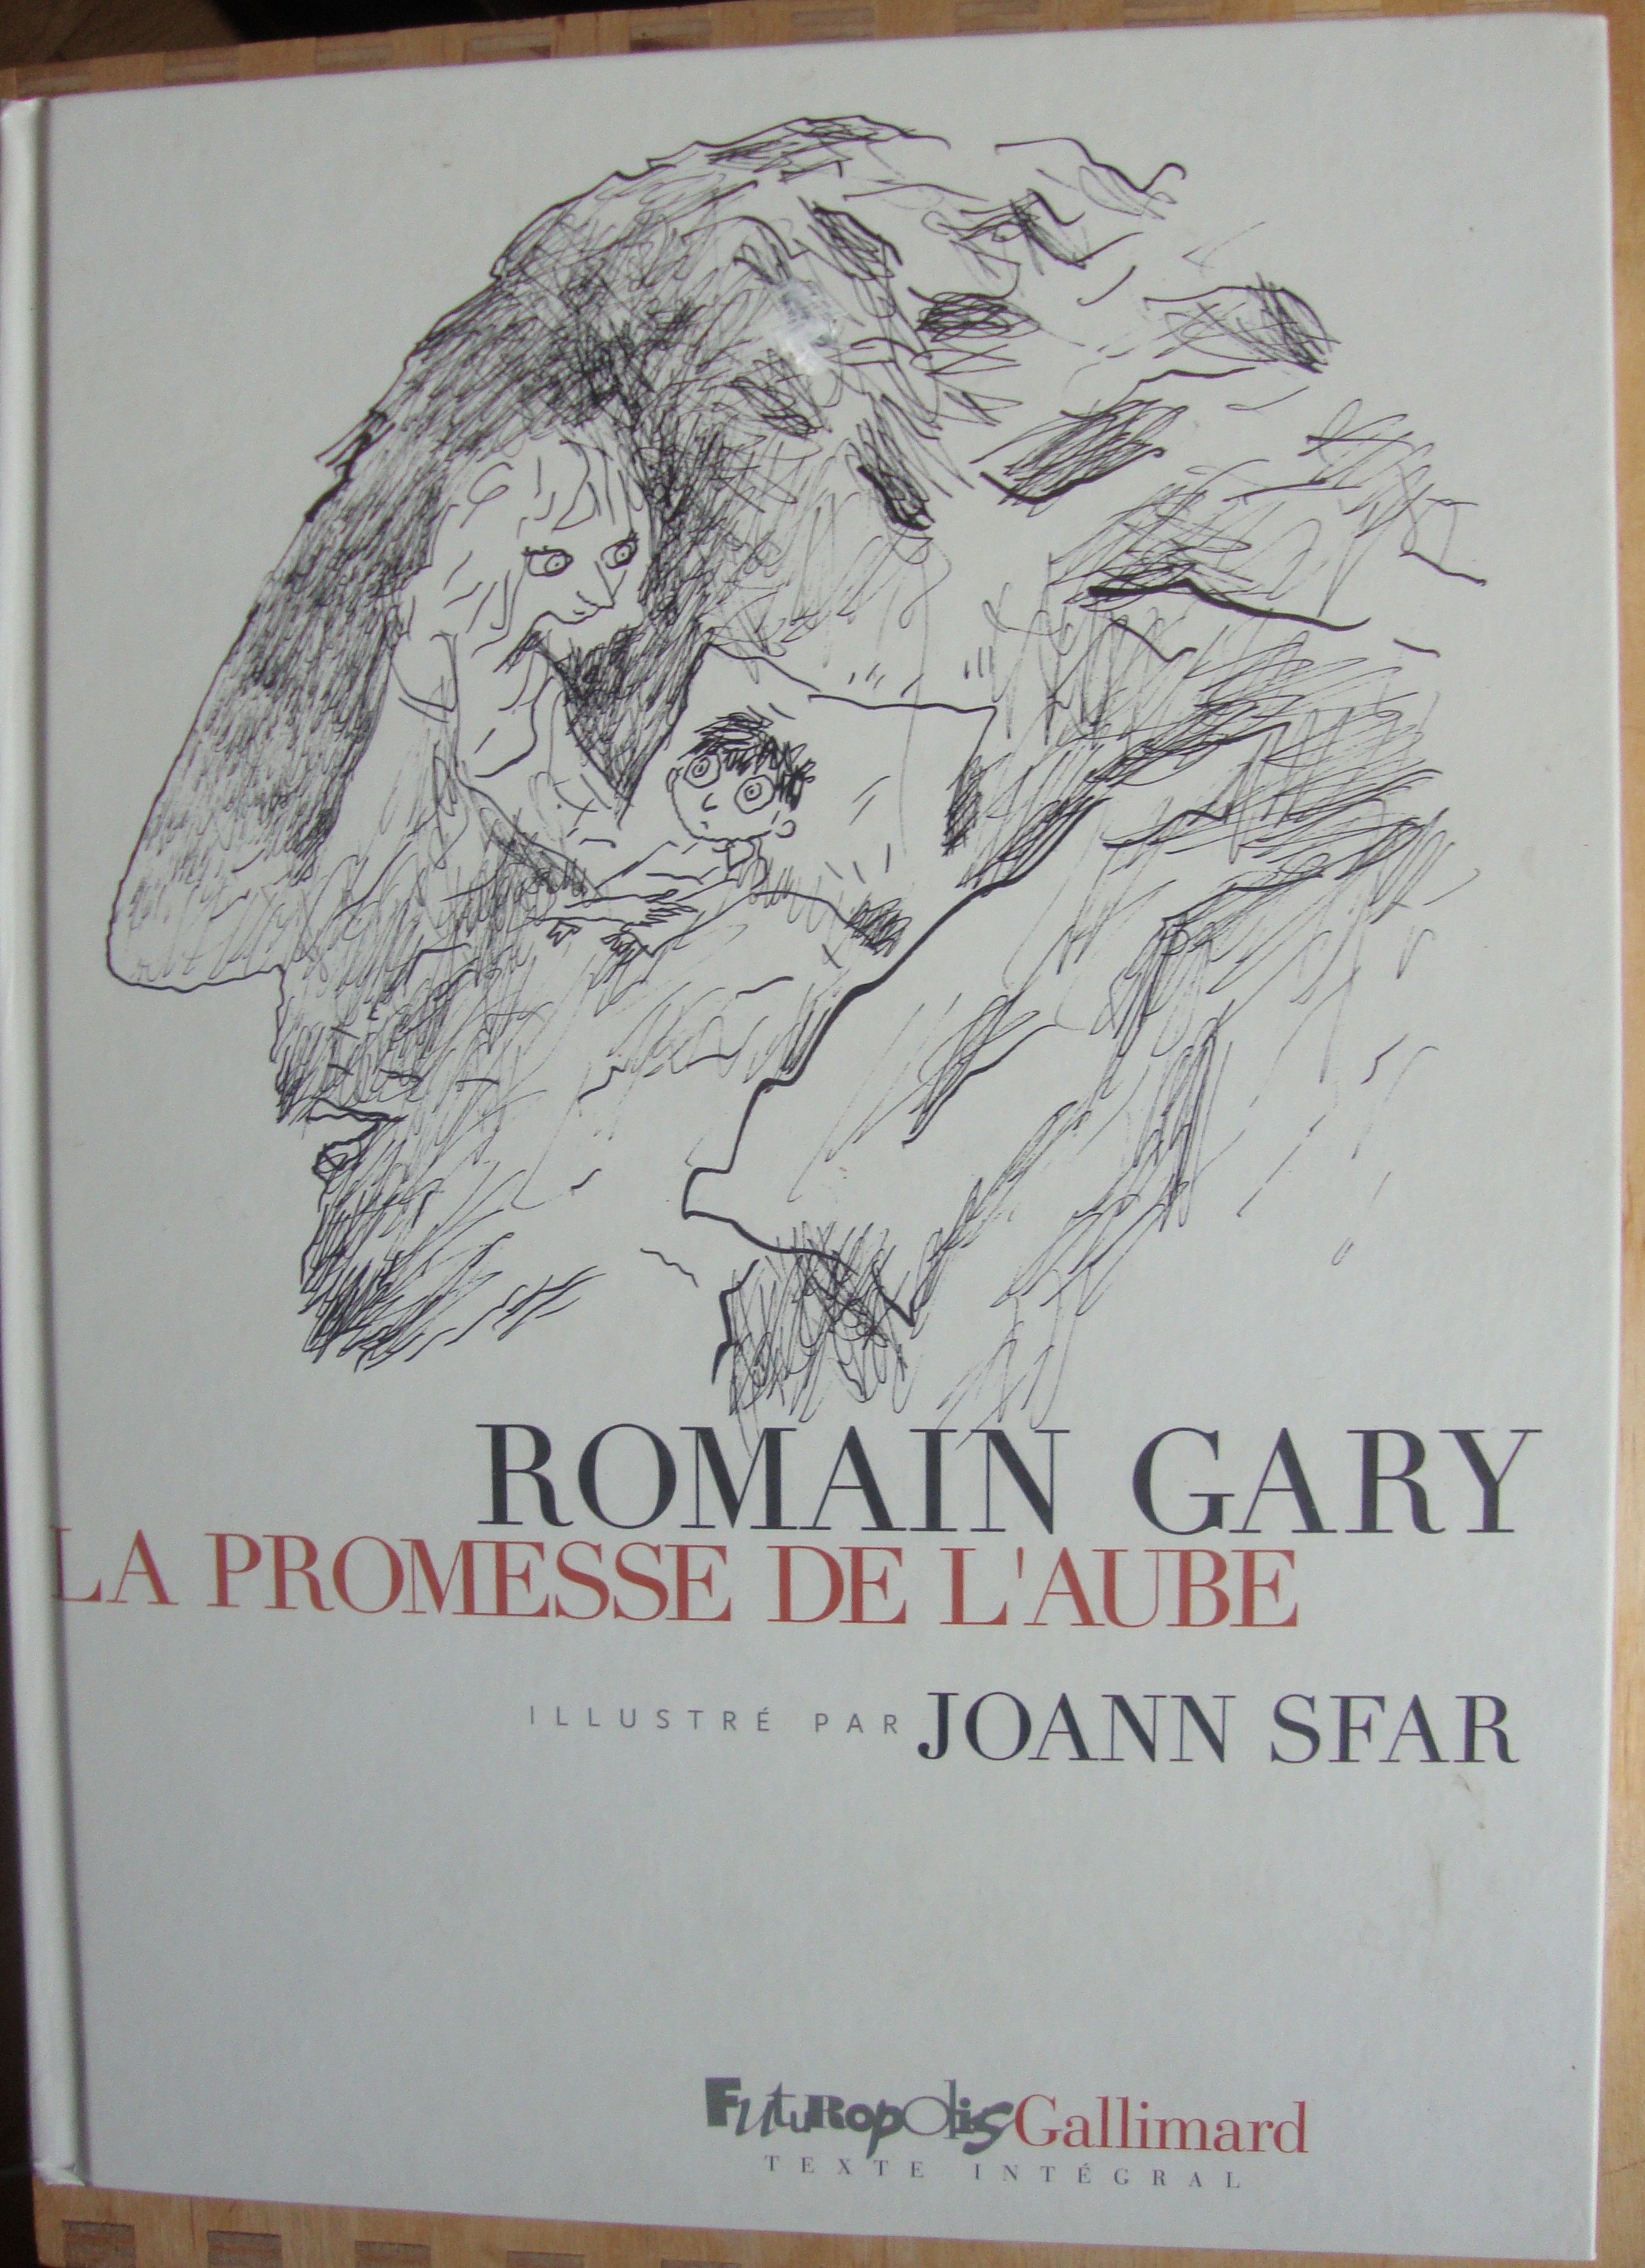 La promesse de l'aube by Romain Gary